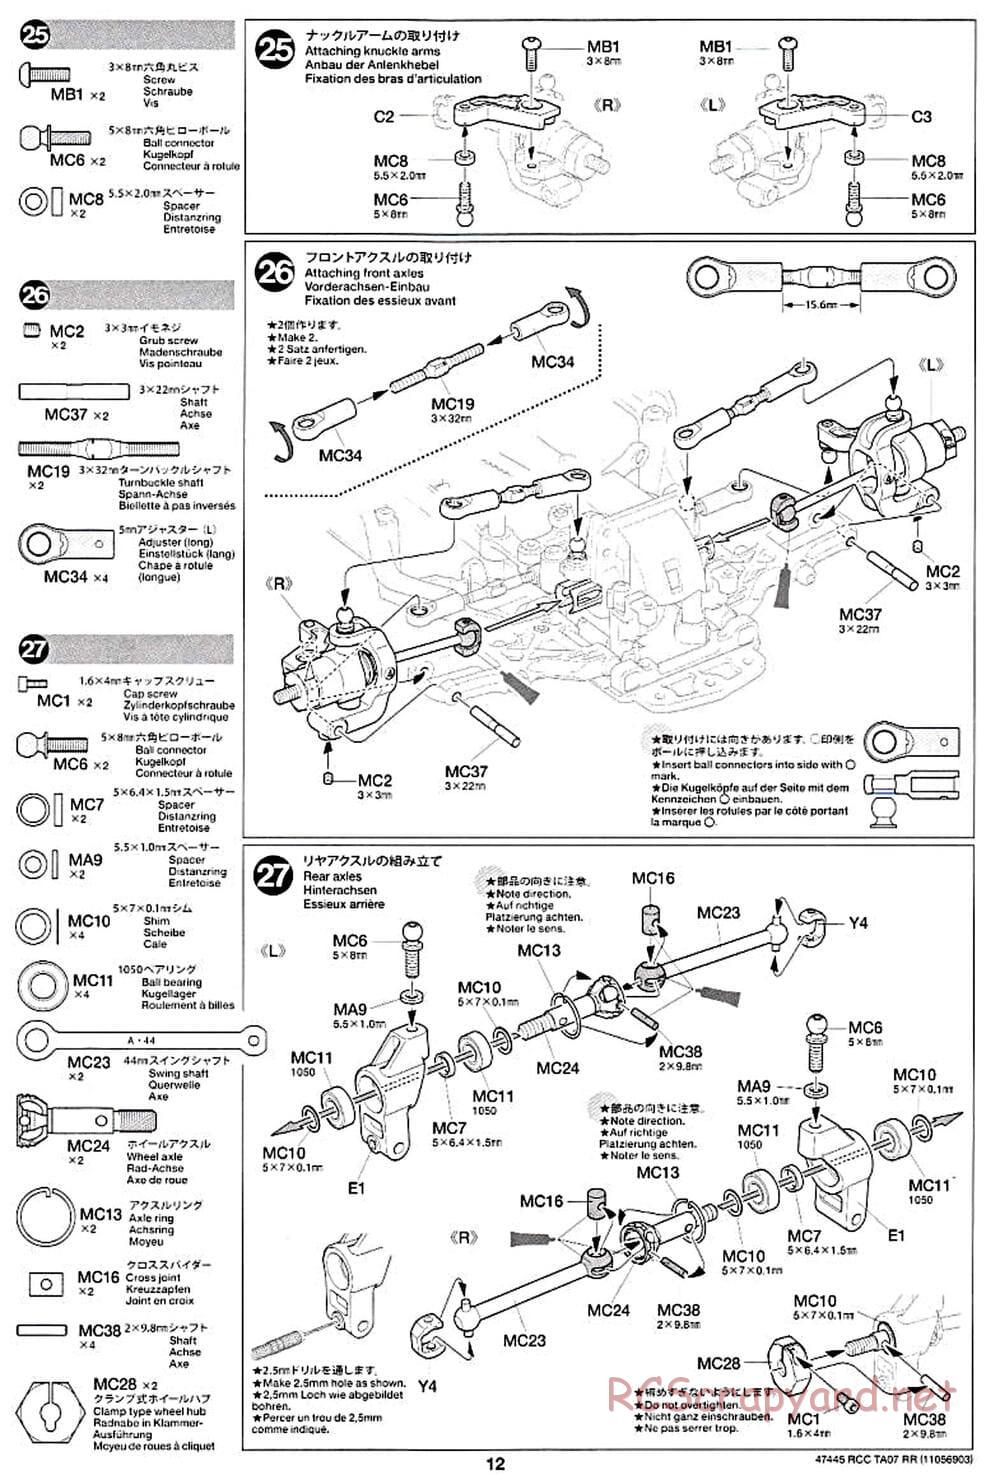 Tamiya - TA07 RR Chassis - Manual - Page 12